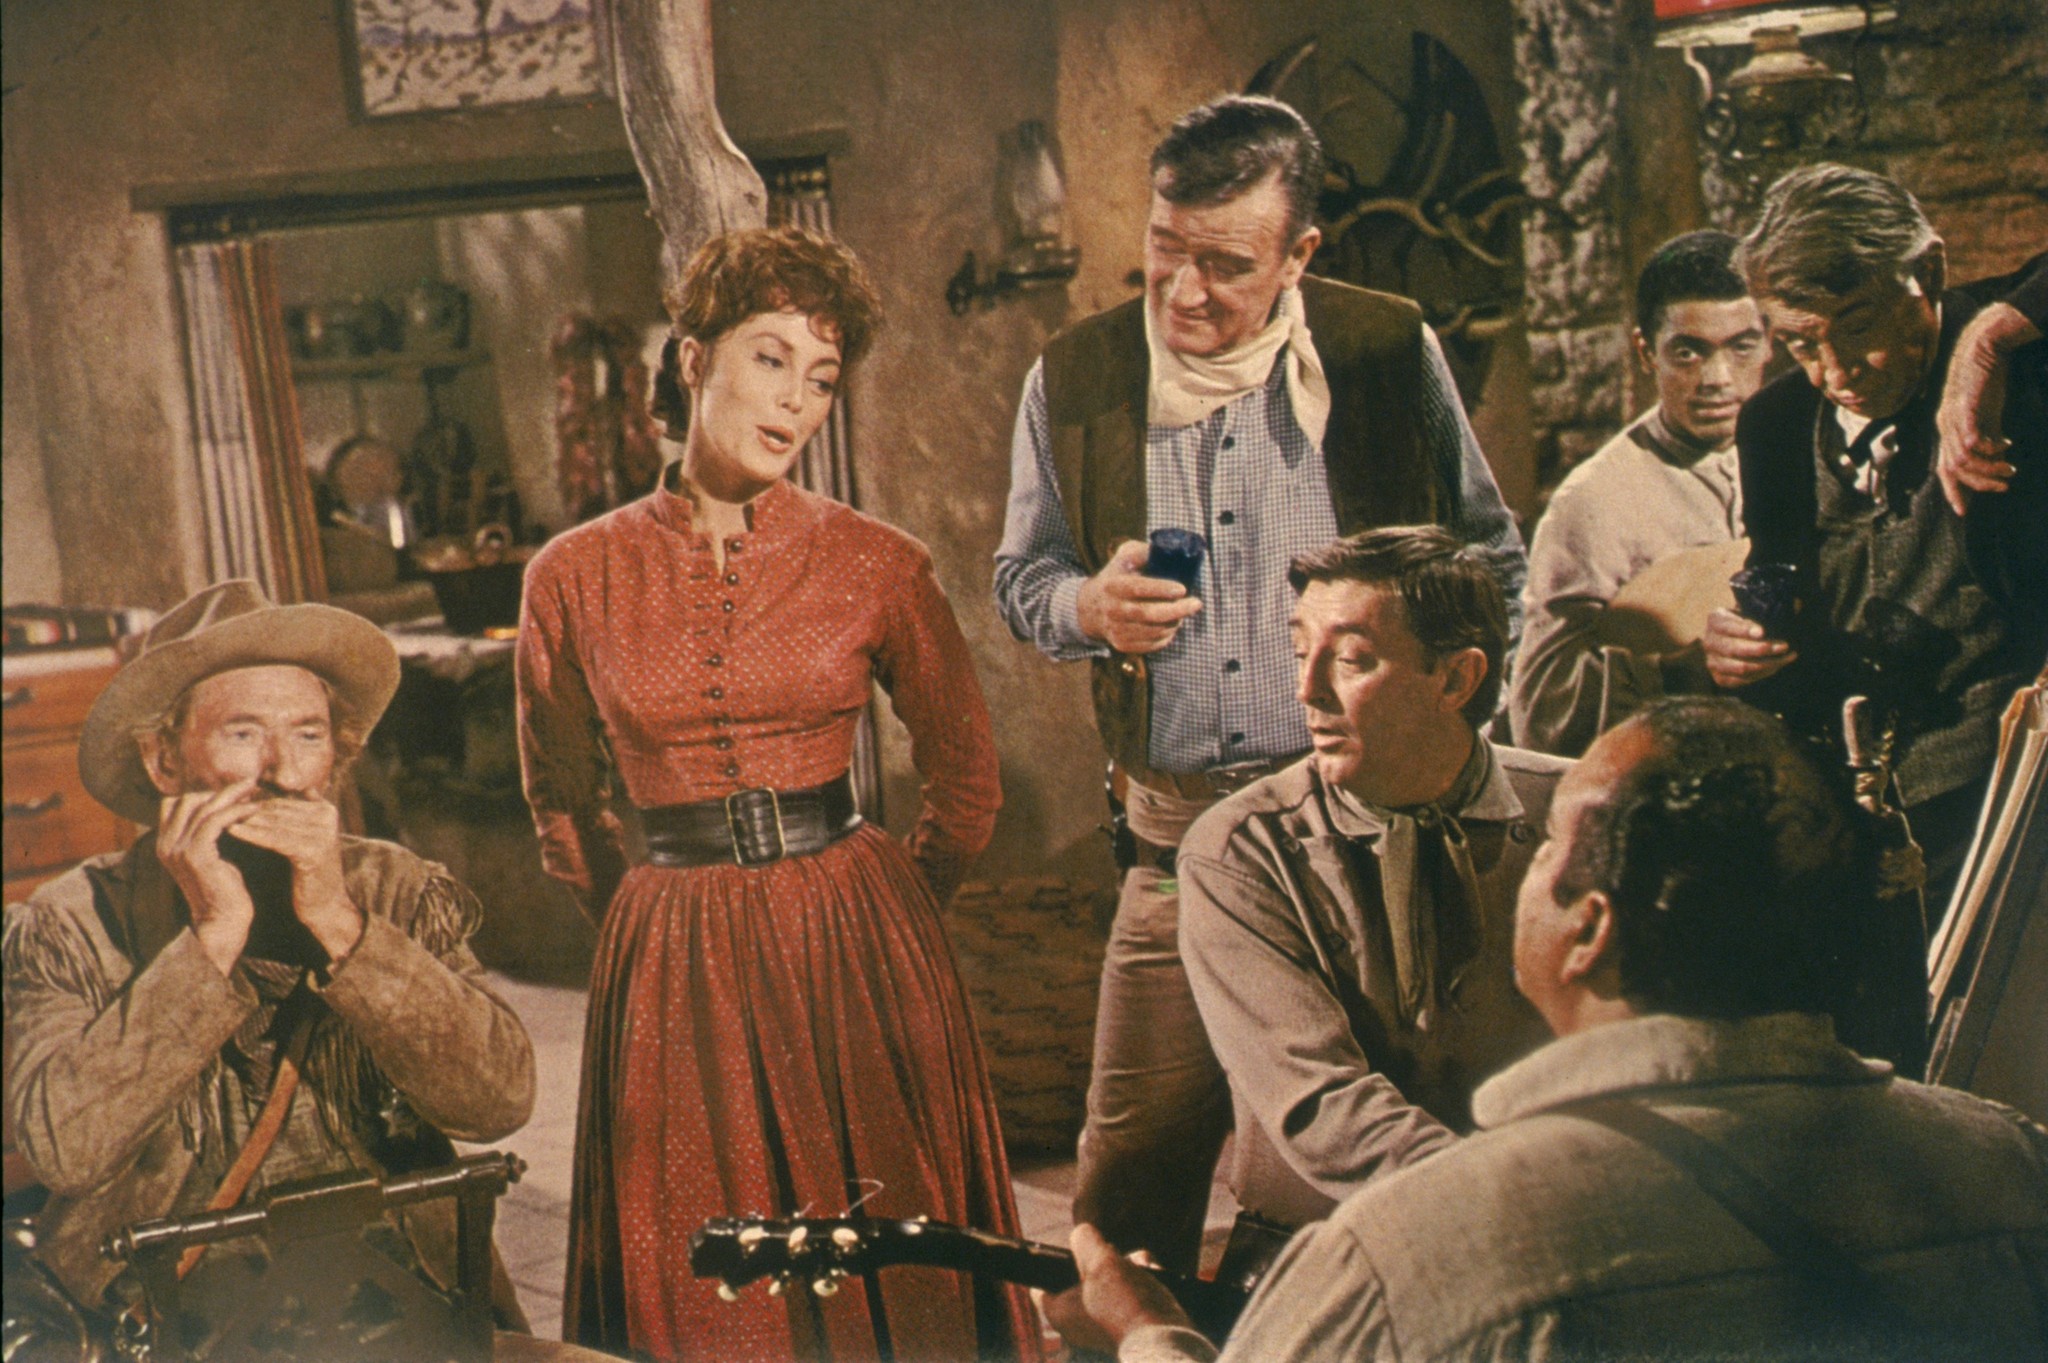 Still of Robert Mitchum and John Wayne in El Dorado (1966)